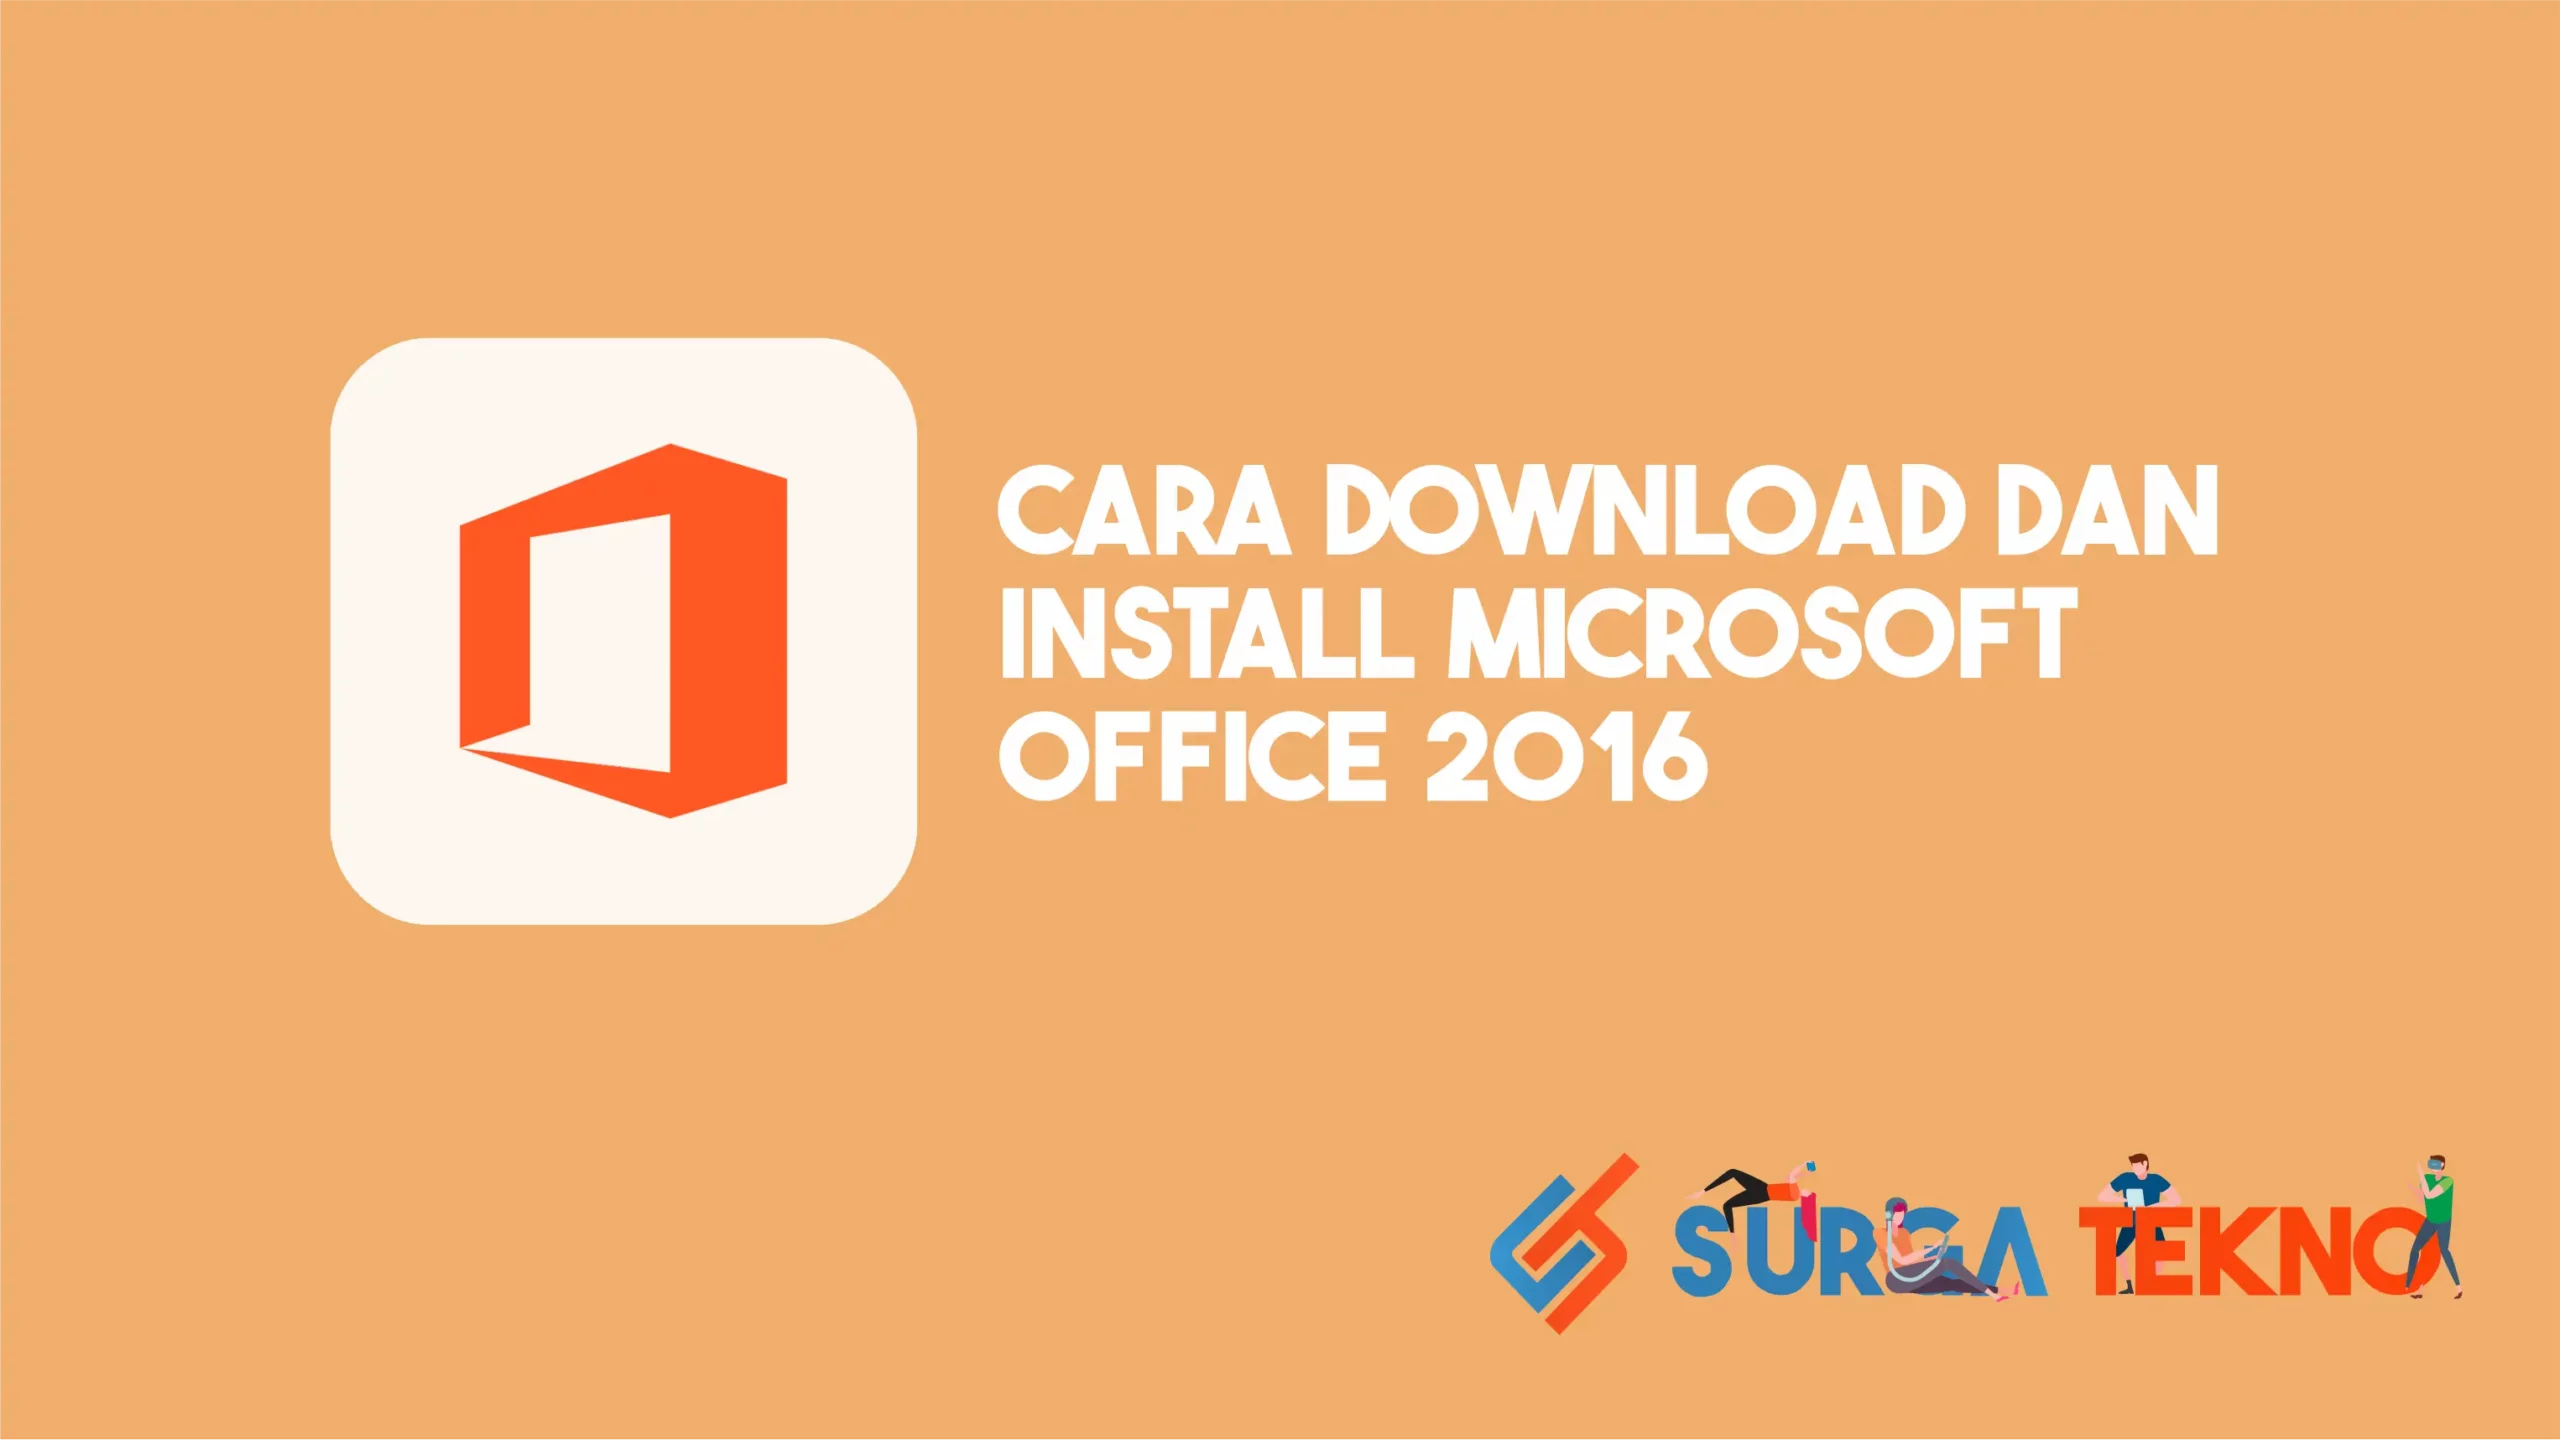 Cara Download dan Install Microsoft Office 2016